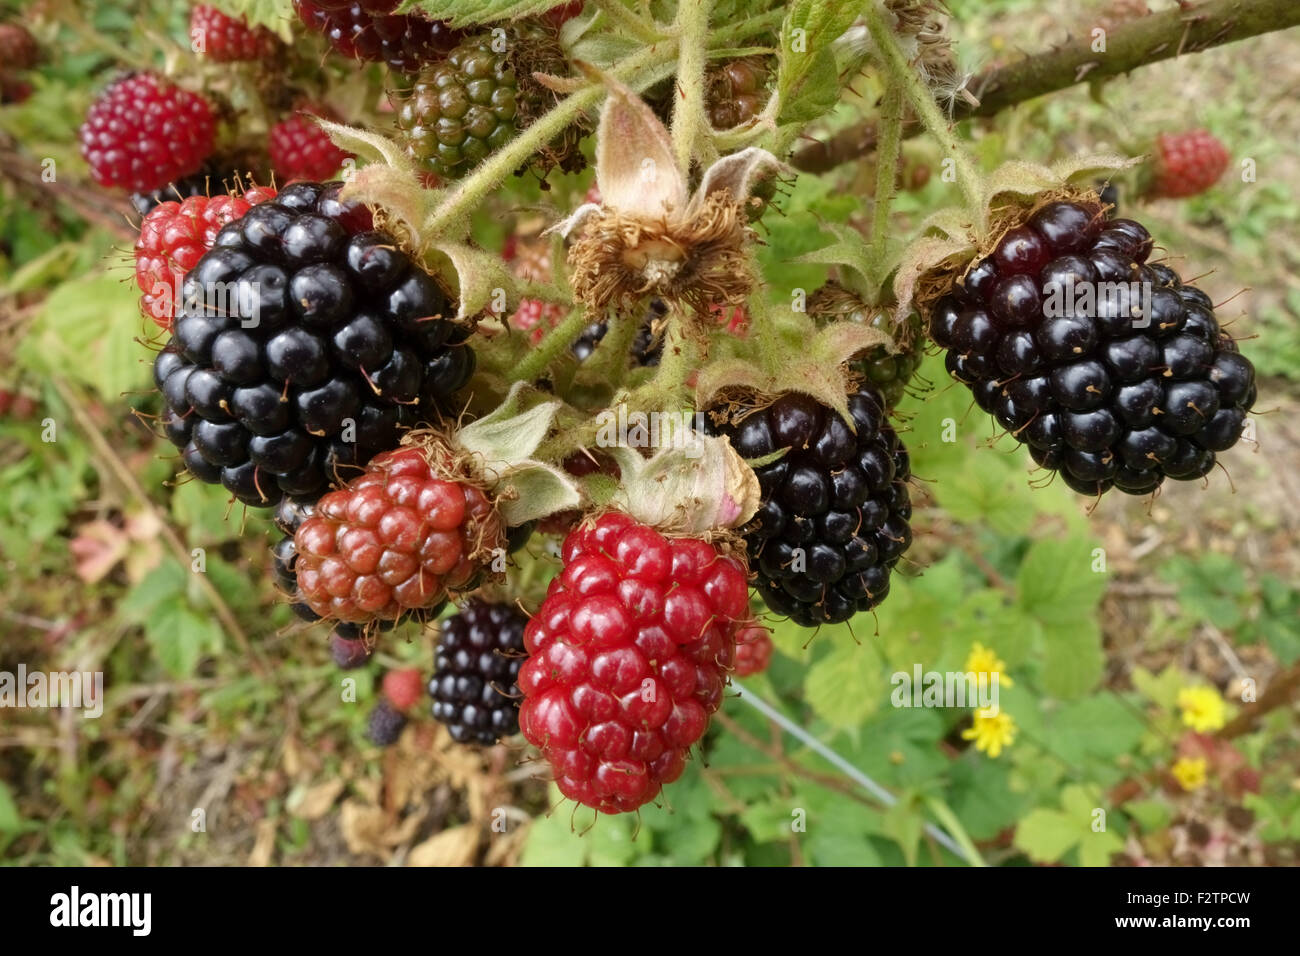 More coltivate su brambles sostenuto da fili in vari stati di maturazione, Berkshire, Luglio Foto Stock